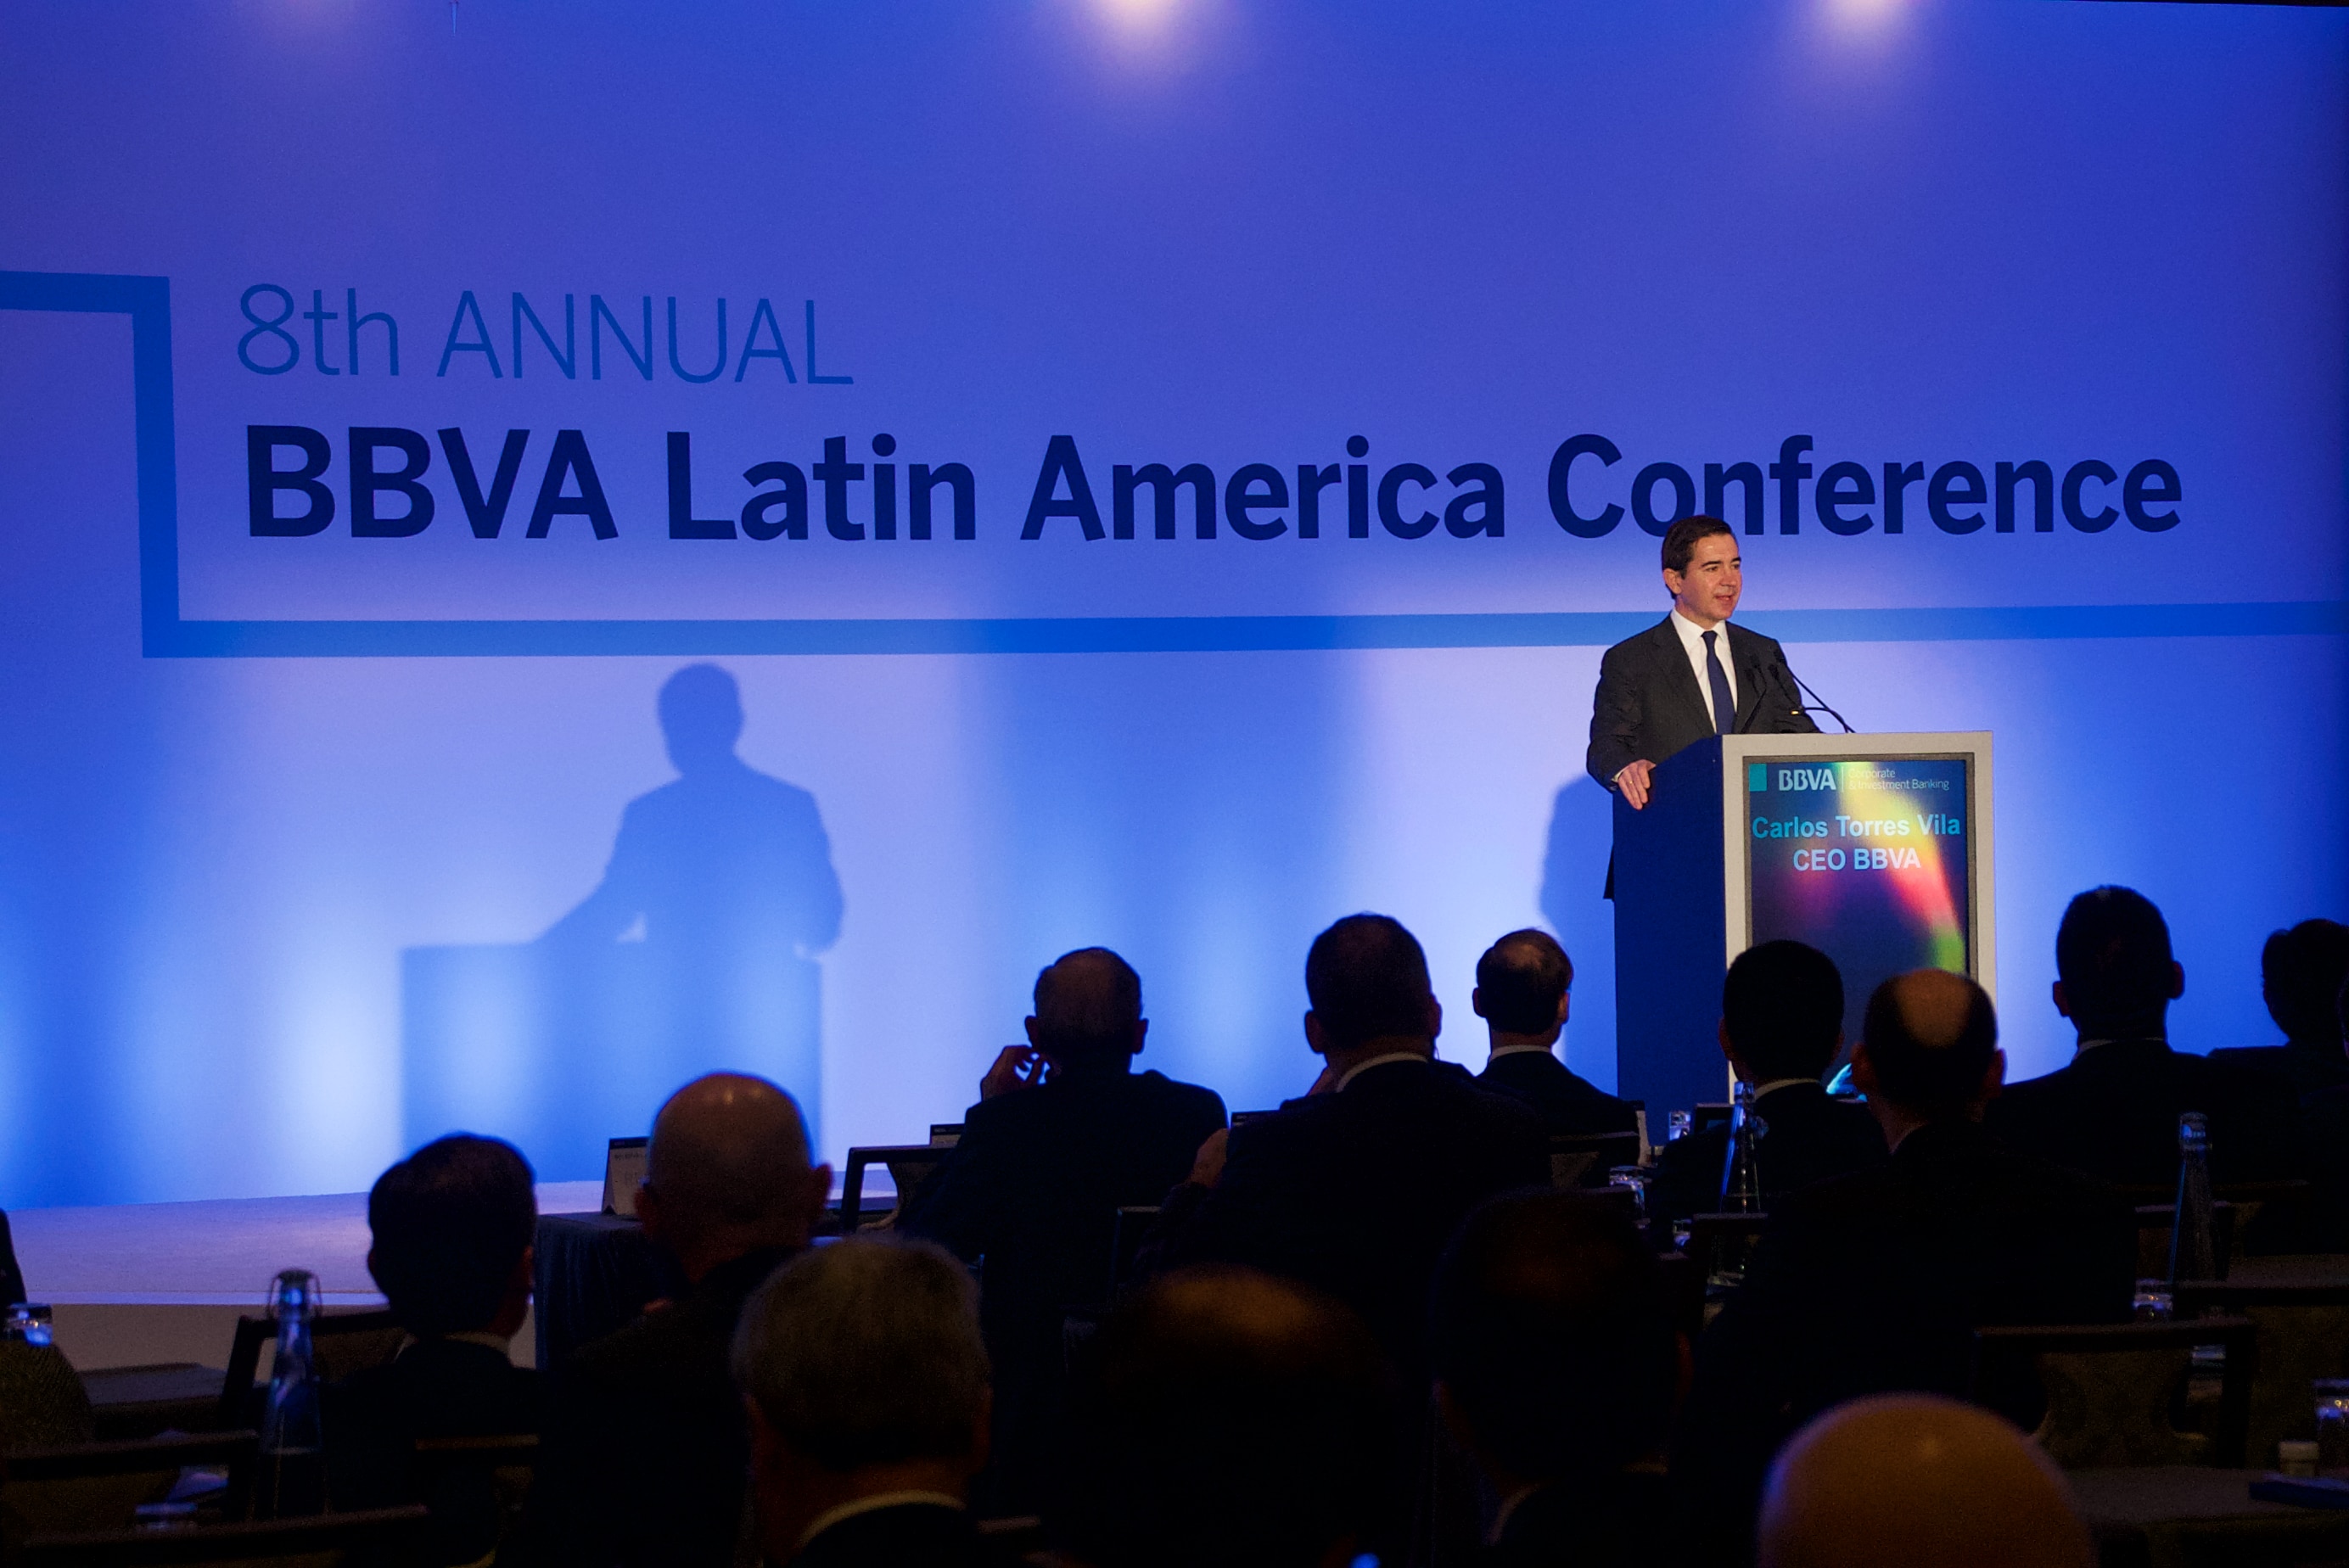 Fotografía de BBVA, Latam, Latin america Conference, Conferencia, finanzas, inversores, emisores de deuda, Consejero Delegado